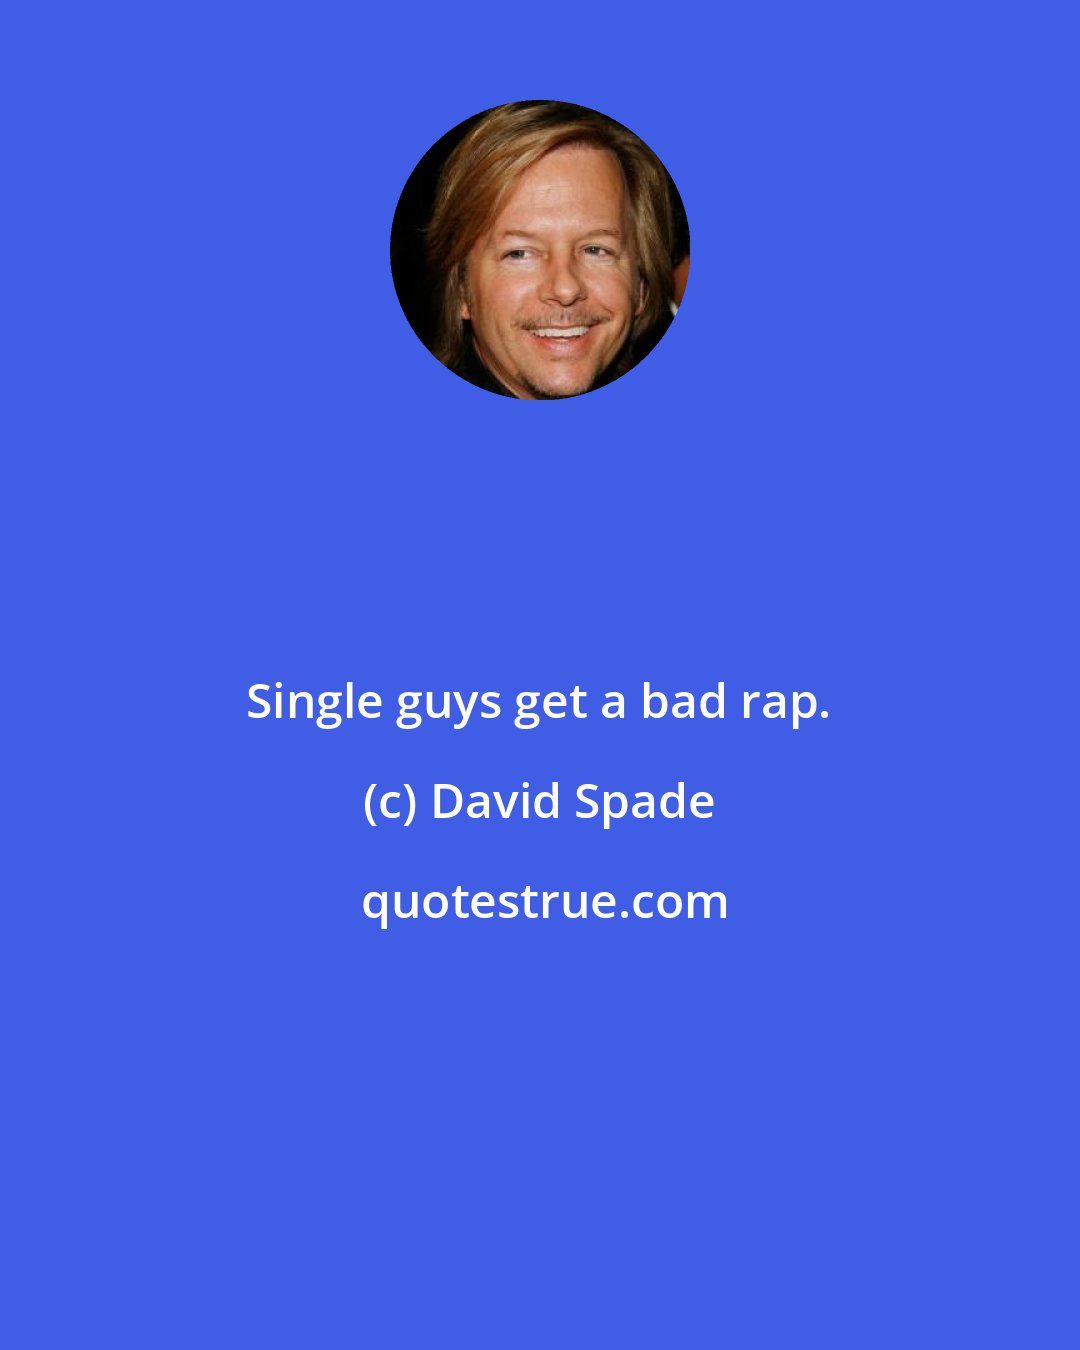 David Spade: Single guys get a bad rap.